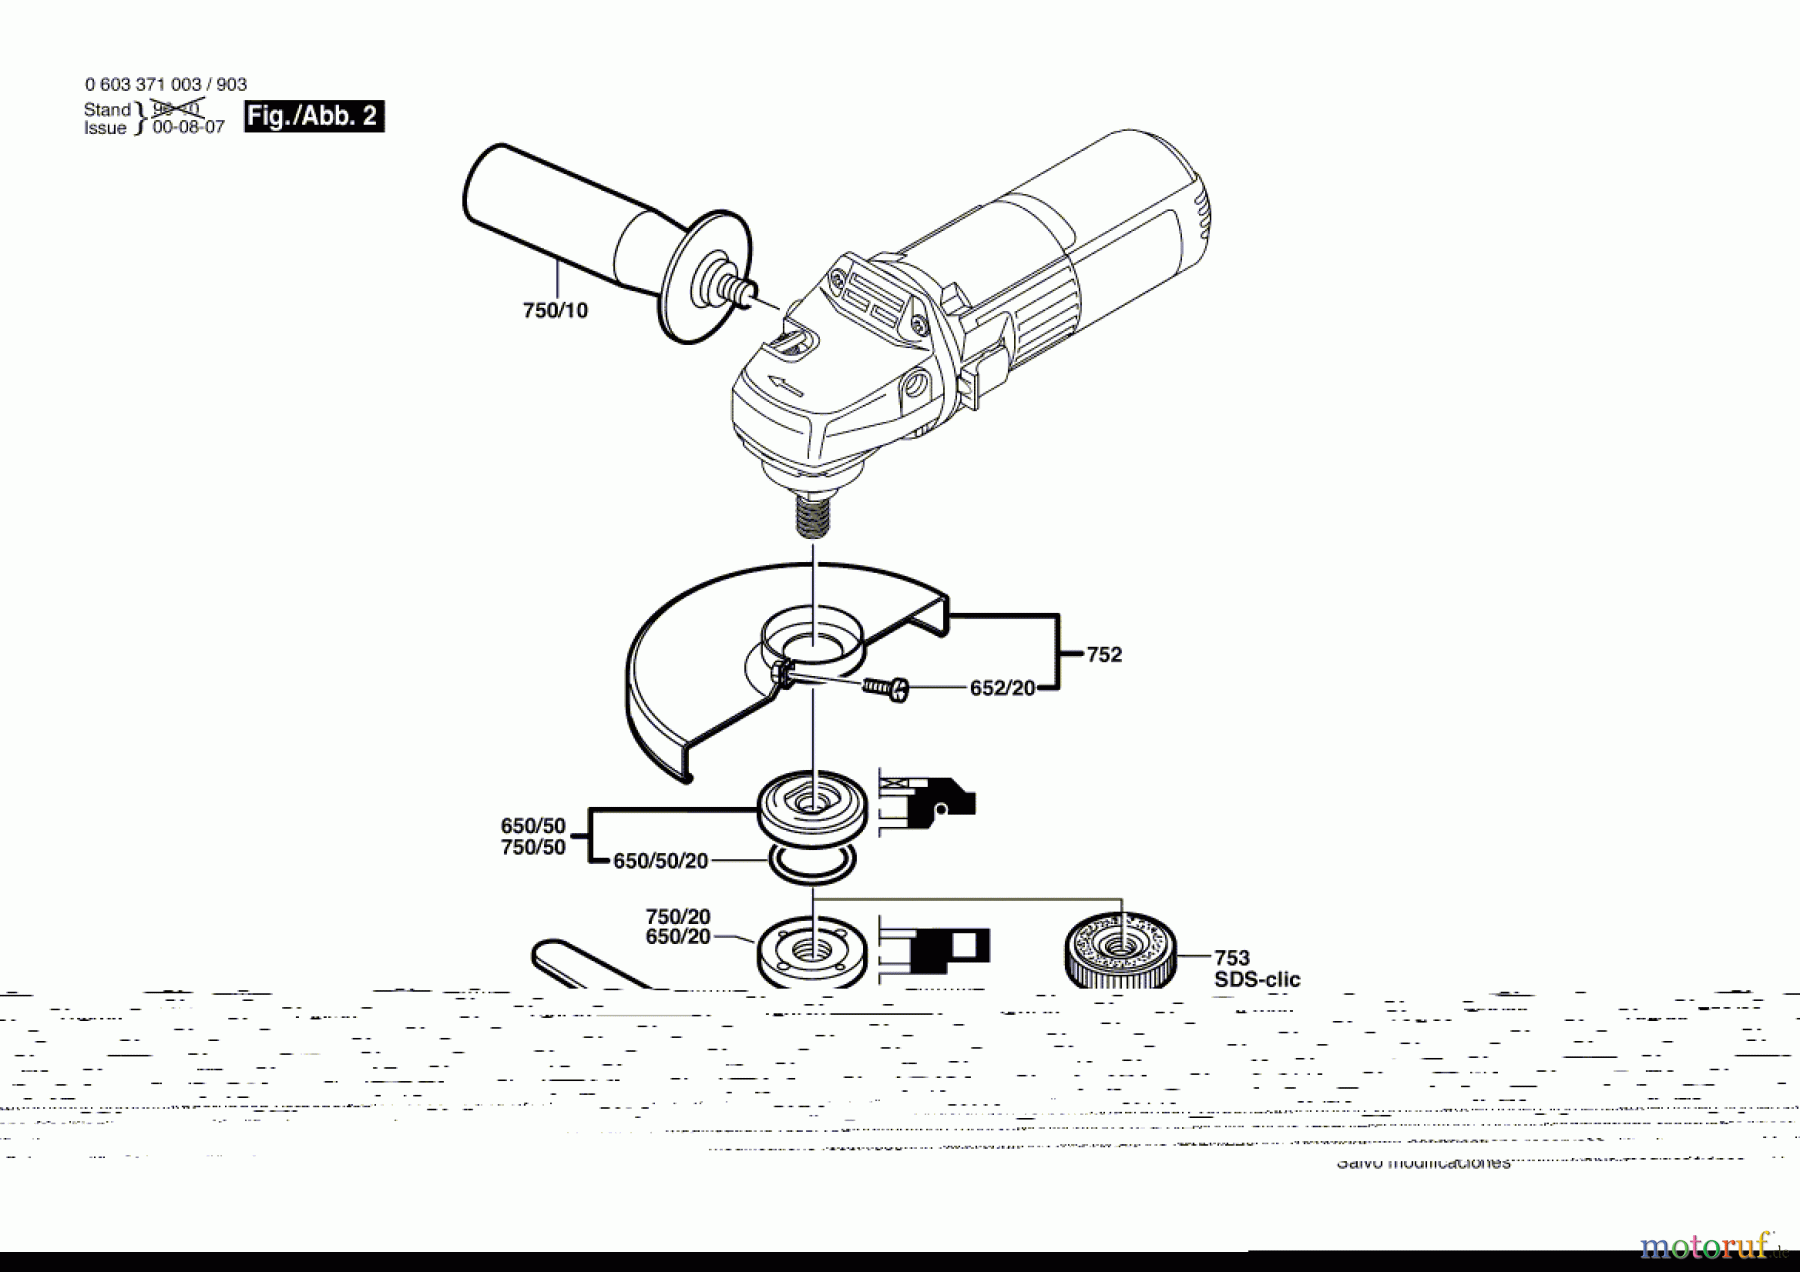  Bosch Werkzeug Winkelschleifer PWS 600 Seite 2